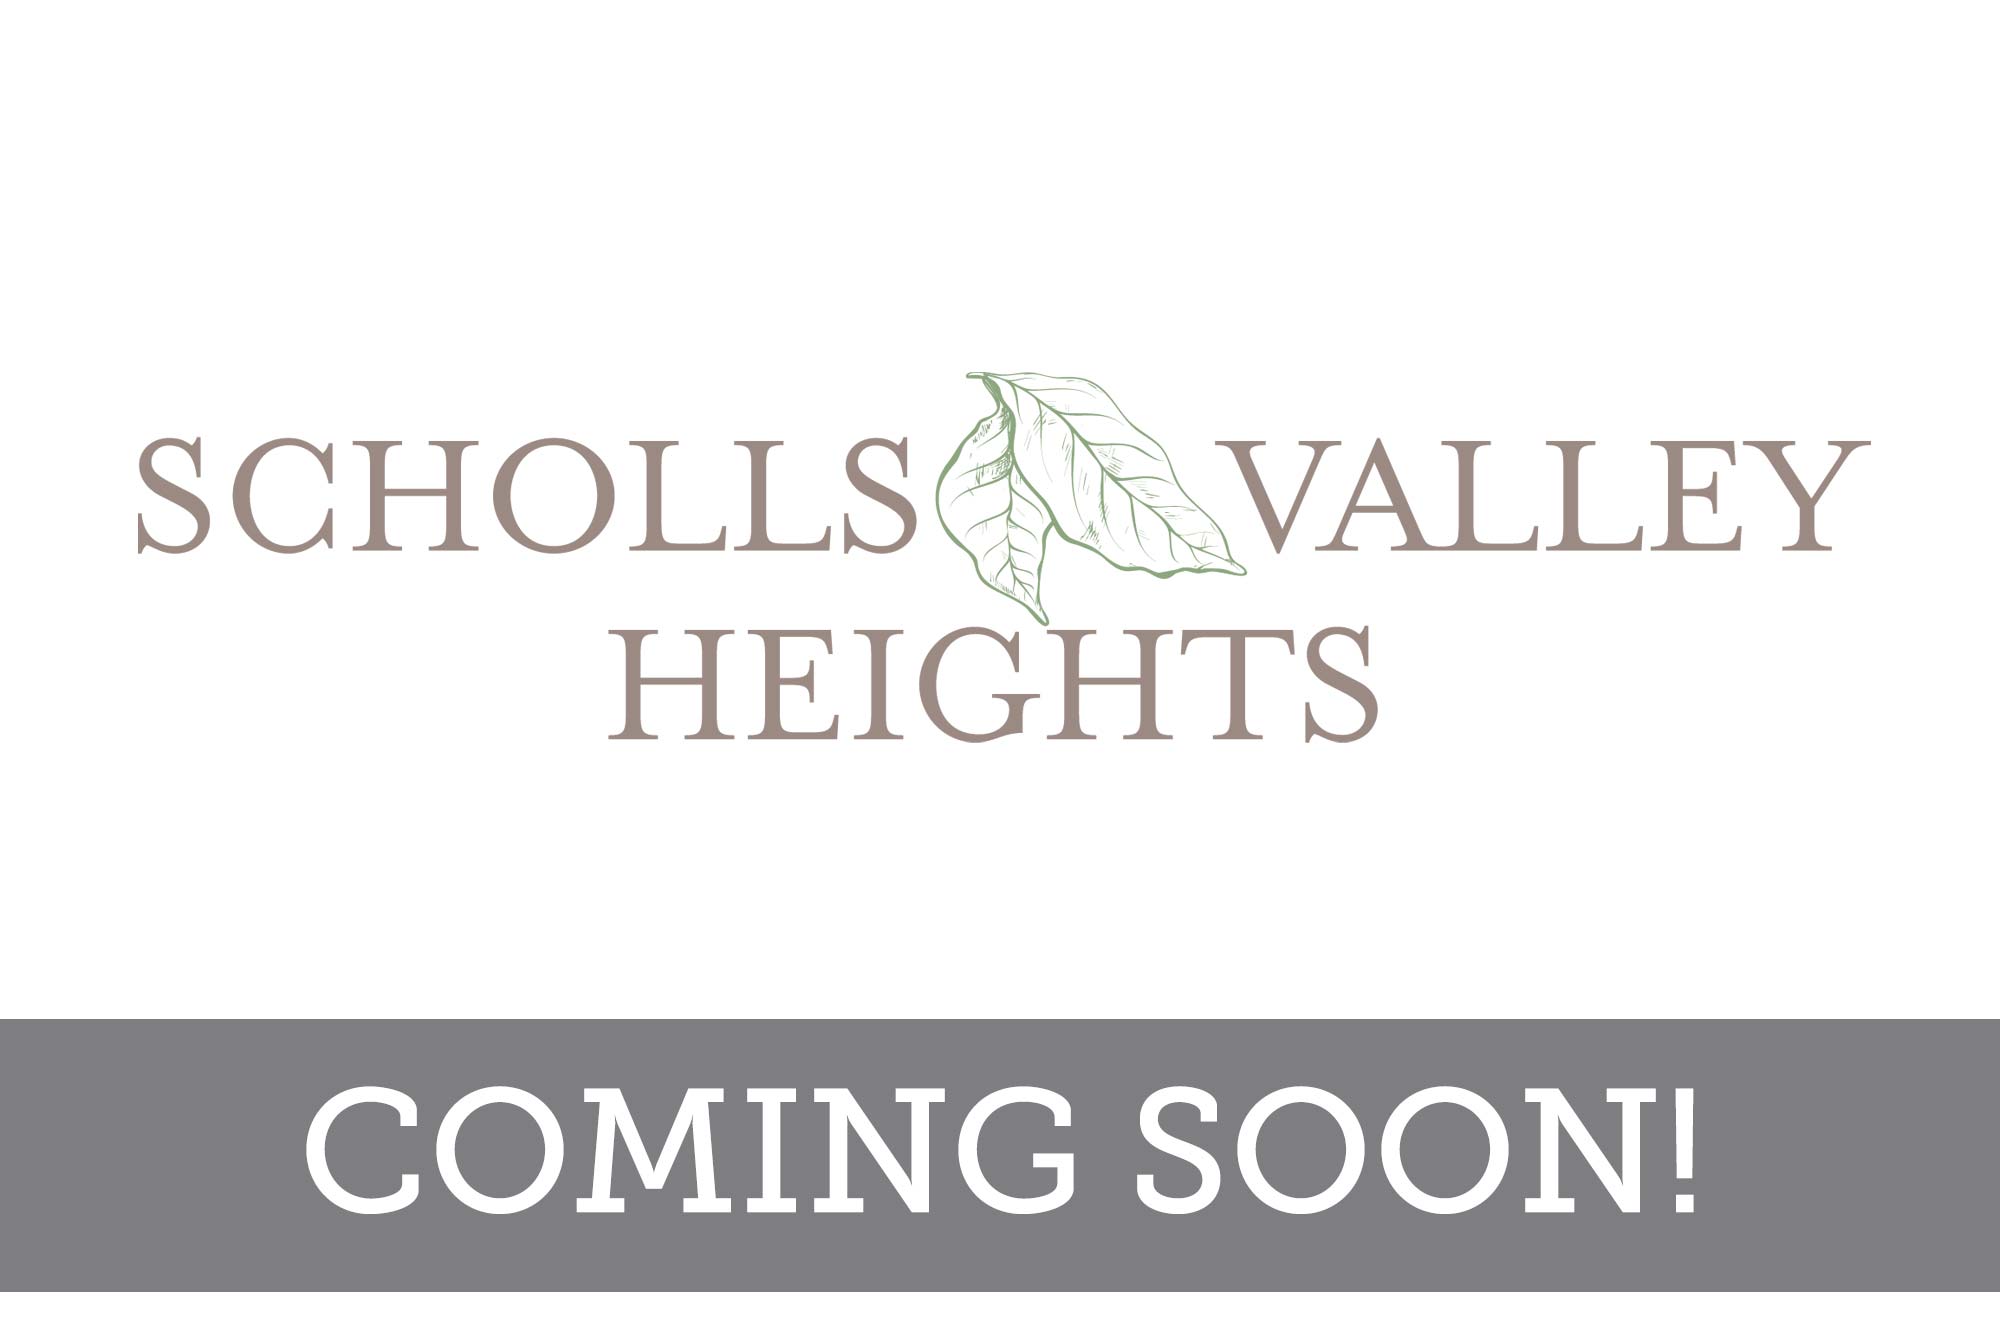 Scholls Valley Heights - Coming Soon